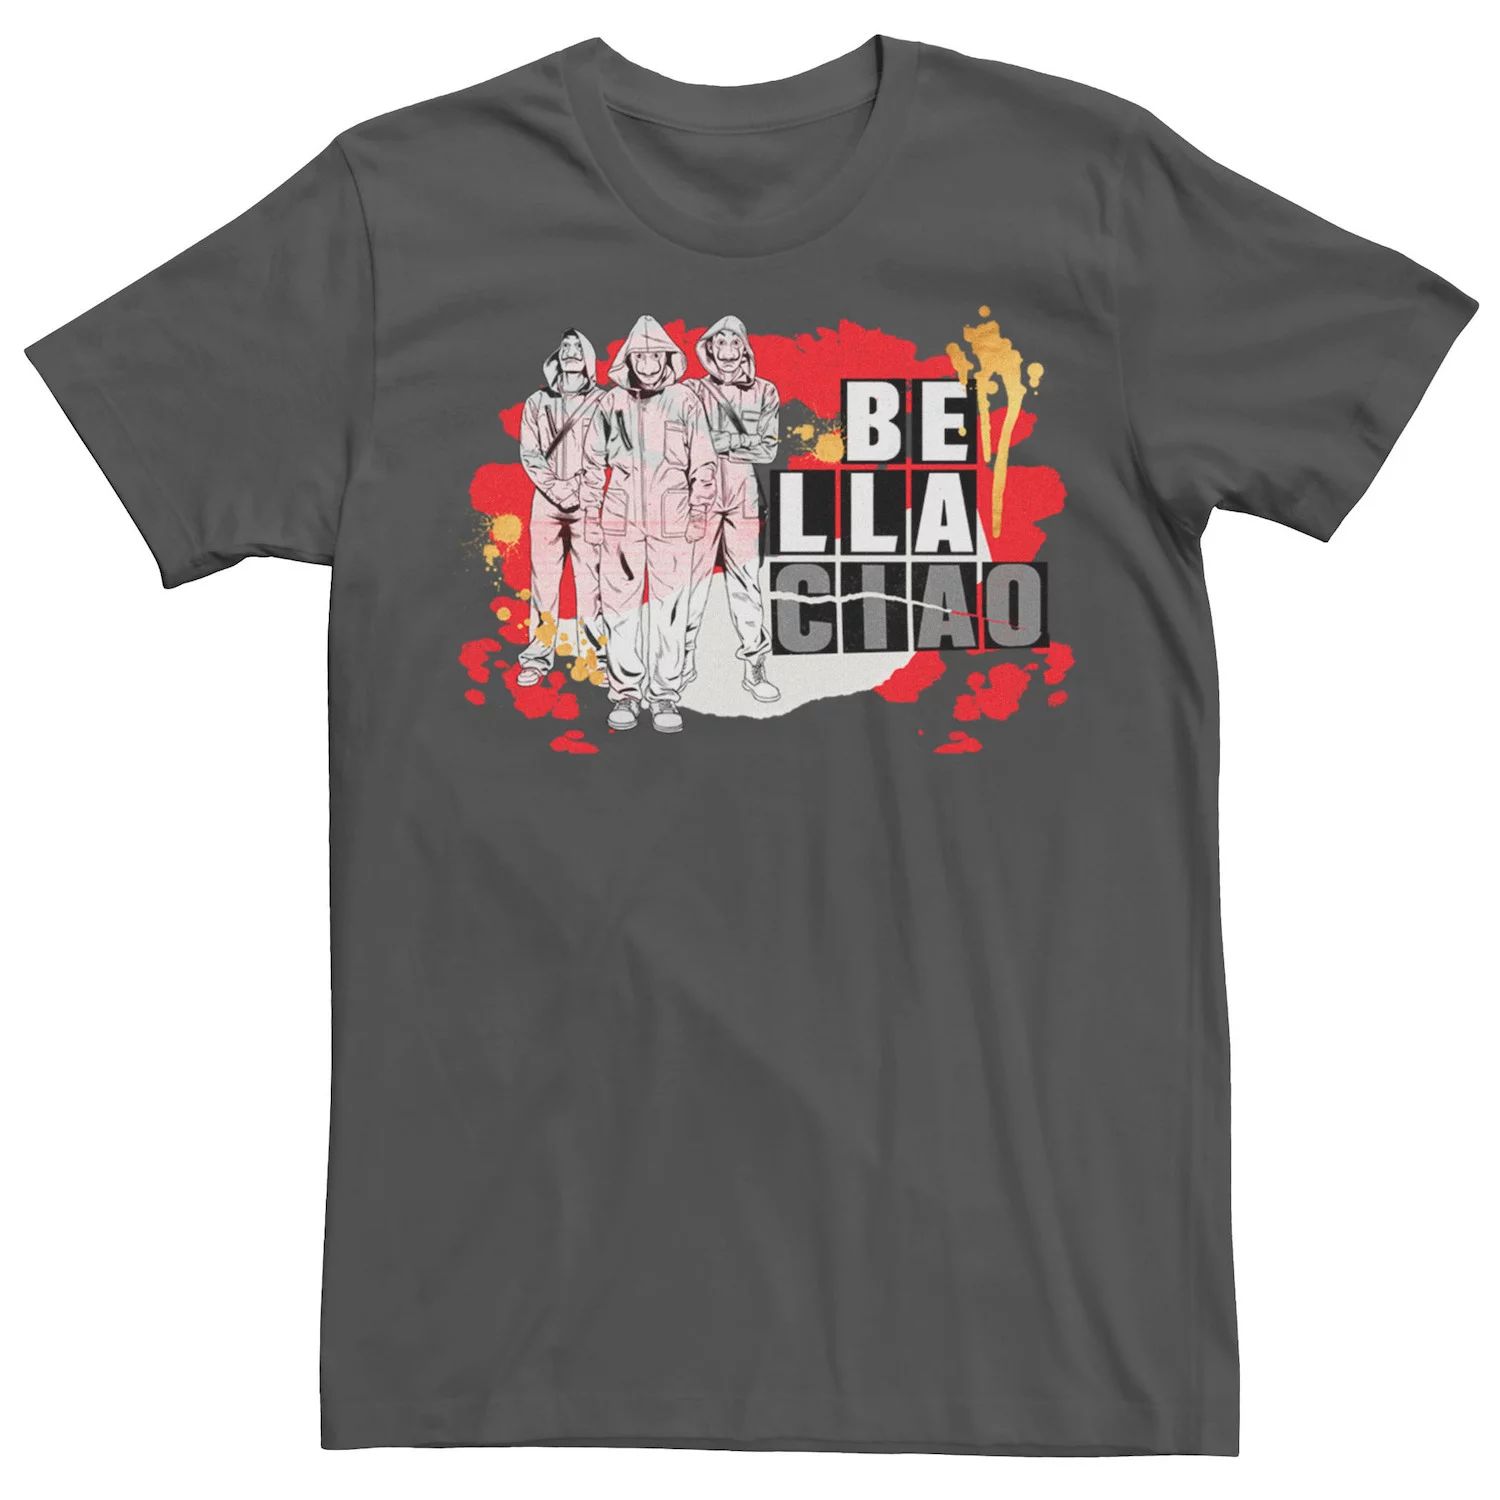 Мужская футболка Netflix La Casa De Papel Bella Ciao с брызгами краски Licensed Character мужская футболка с короткими рукавами la casa de papel bella ciao masked trio fifth sun белый